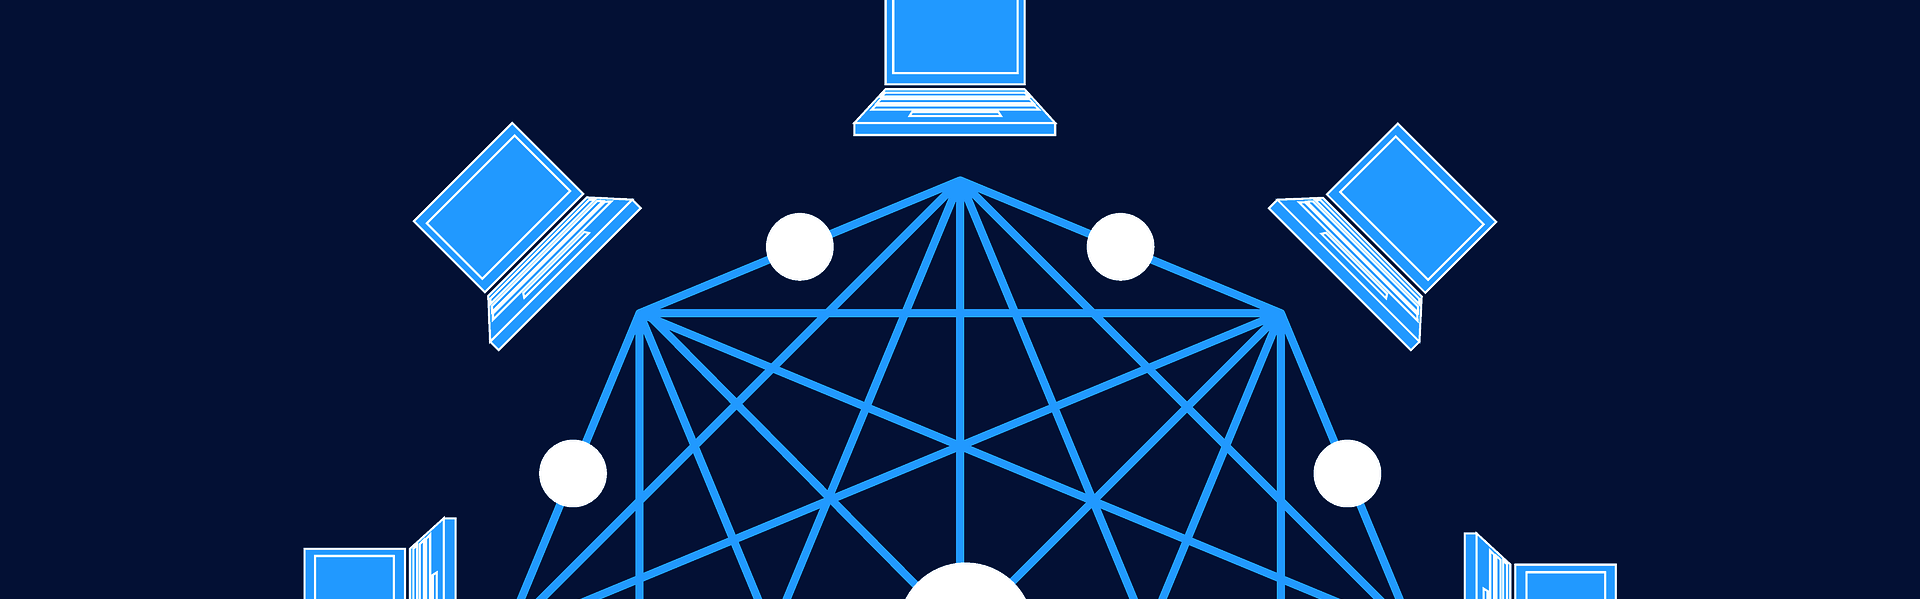 Das Bild zeigt Computer und ein Netz.